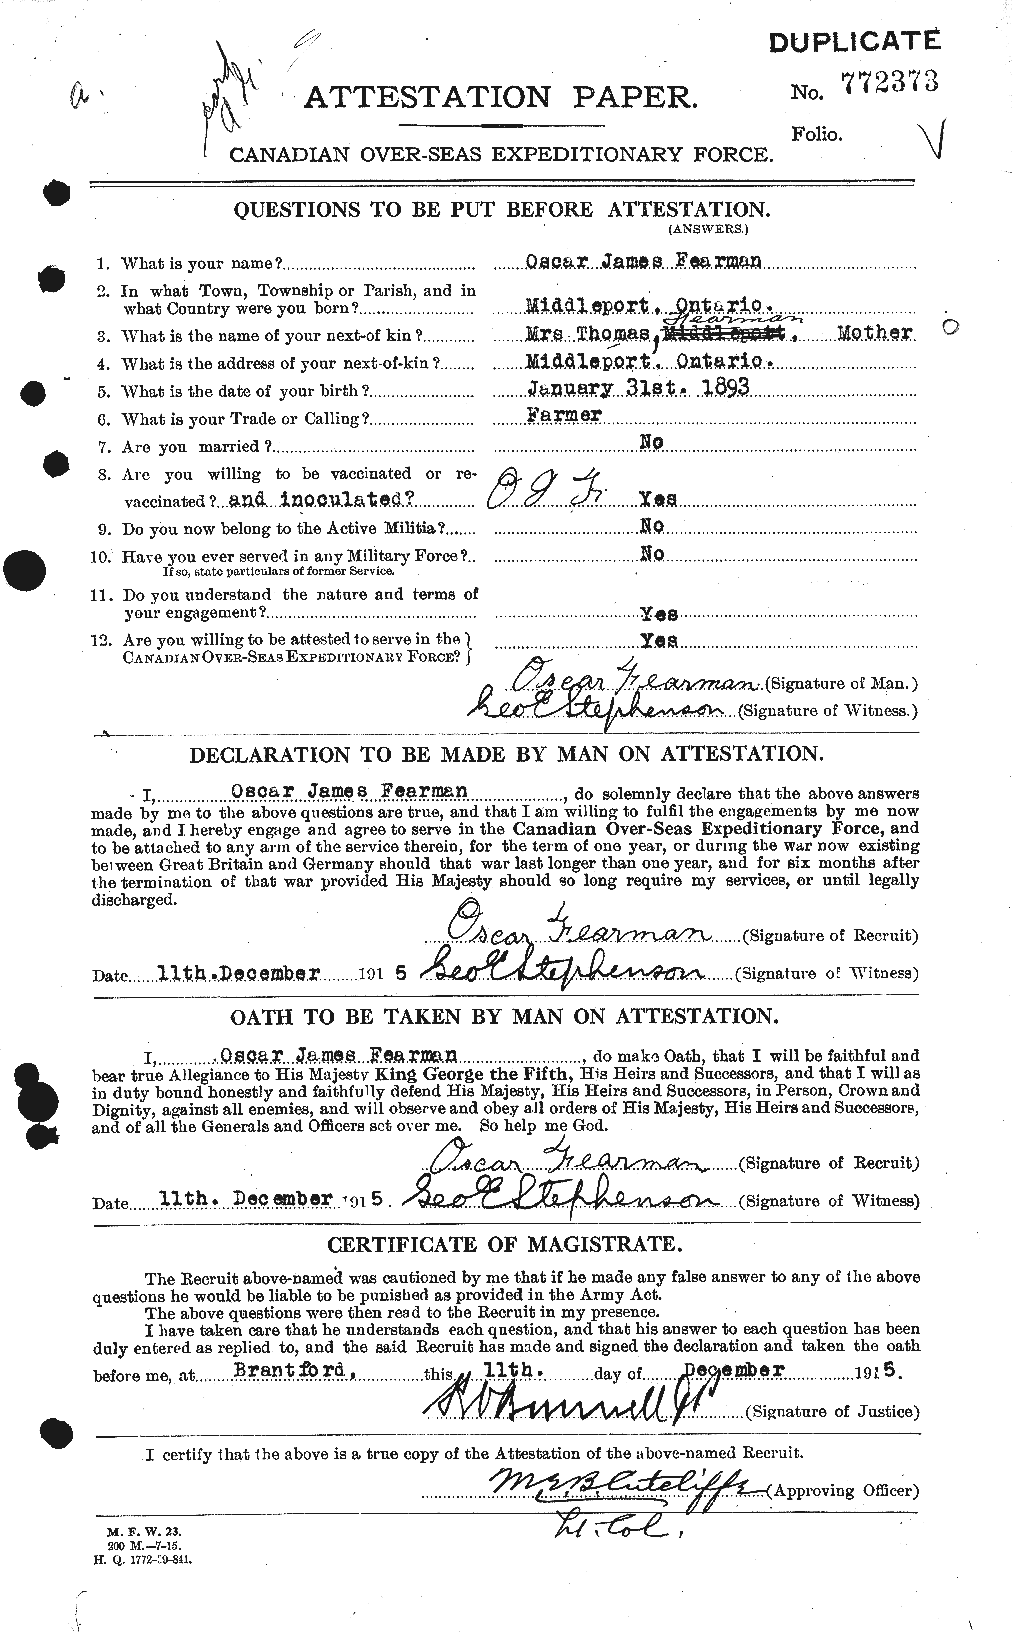 Dossiers du Personnel de la Première Guerre mondiale - CEC 319562a